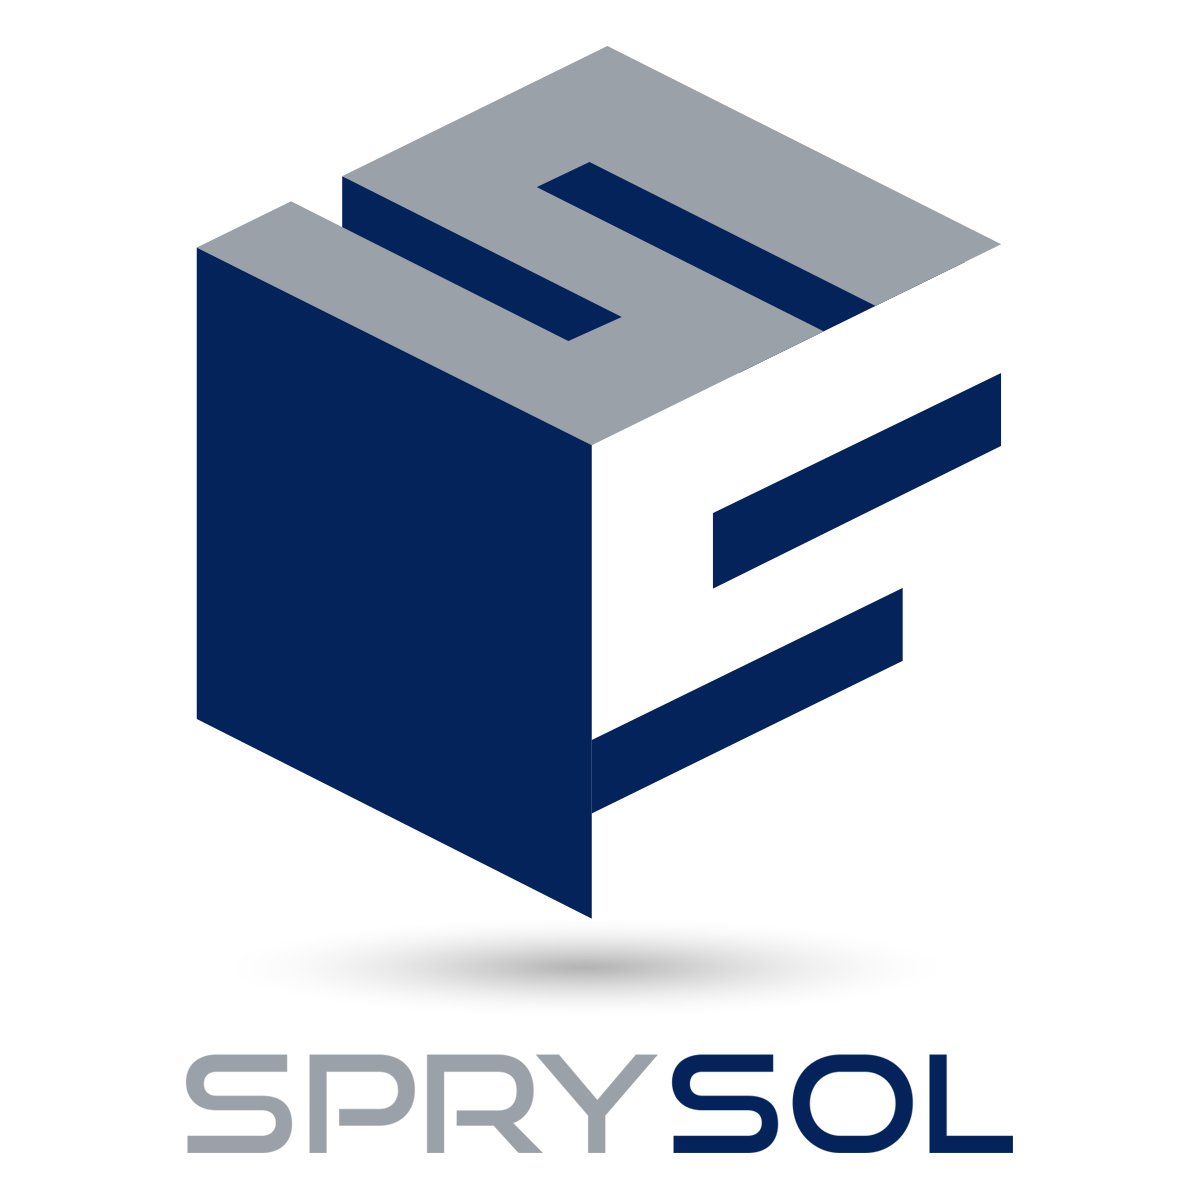 SPRYSOL logo